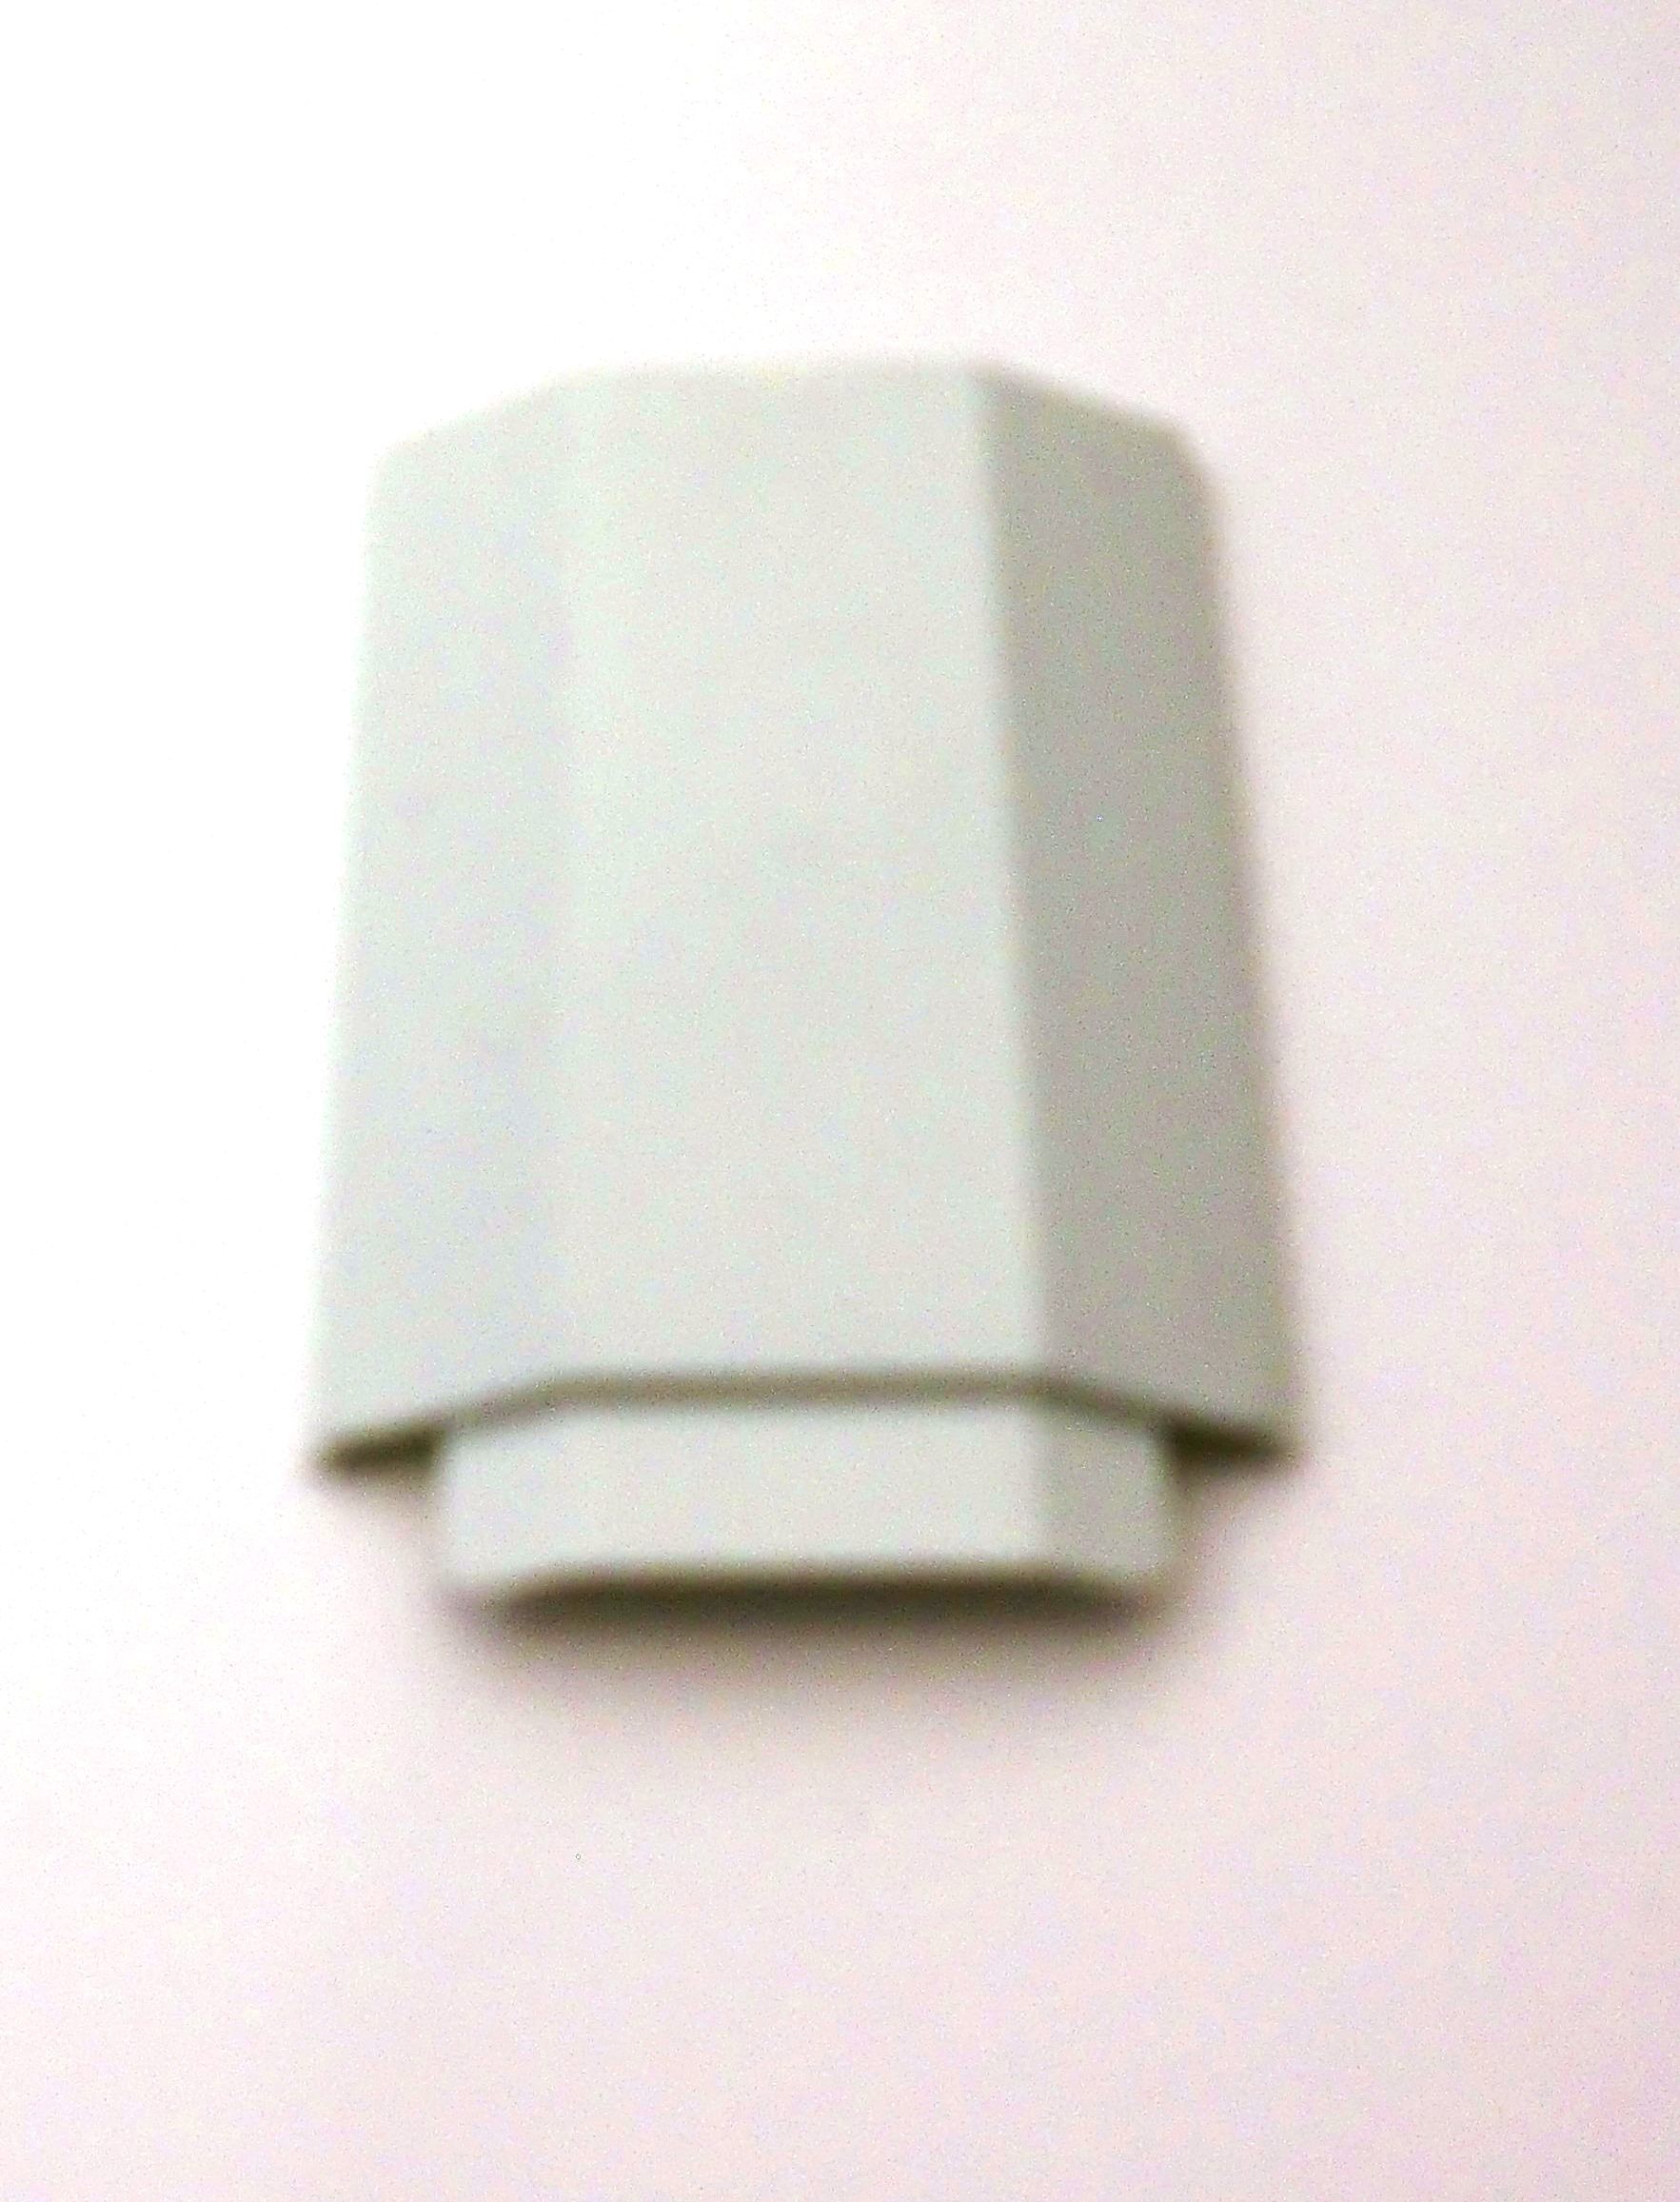 Rhino - Left Lamp Socket Cover 